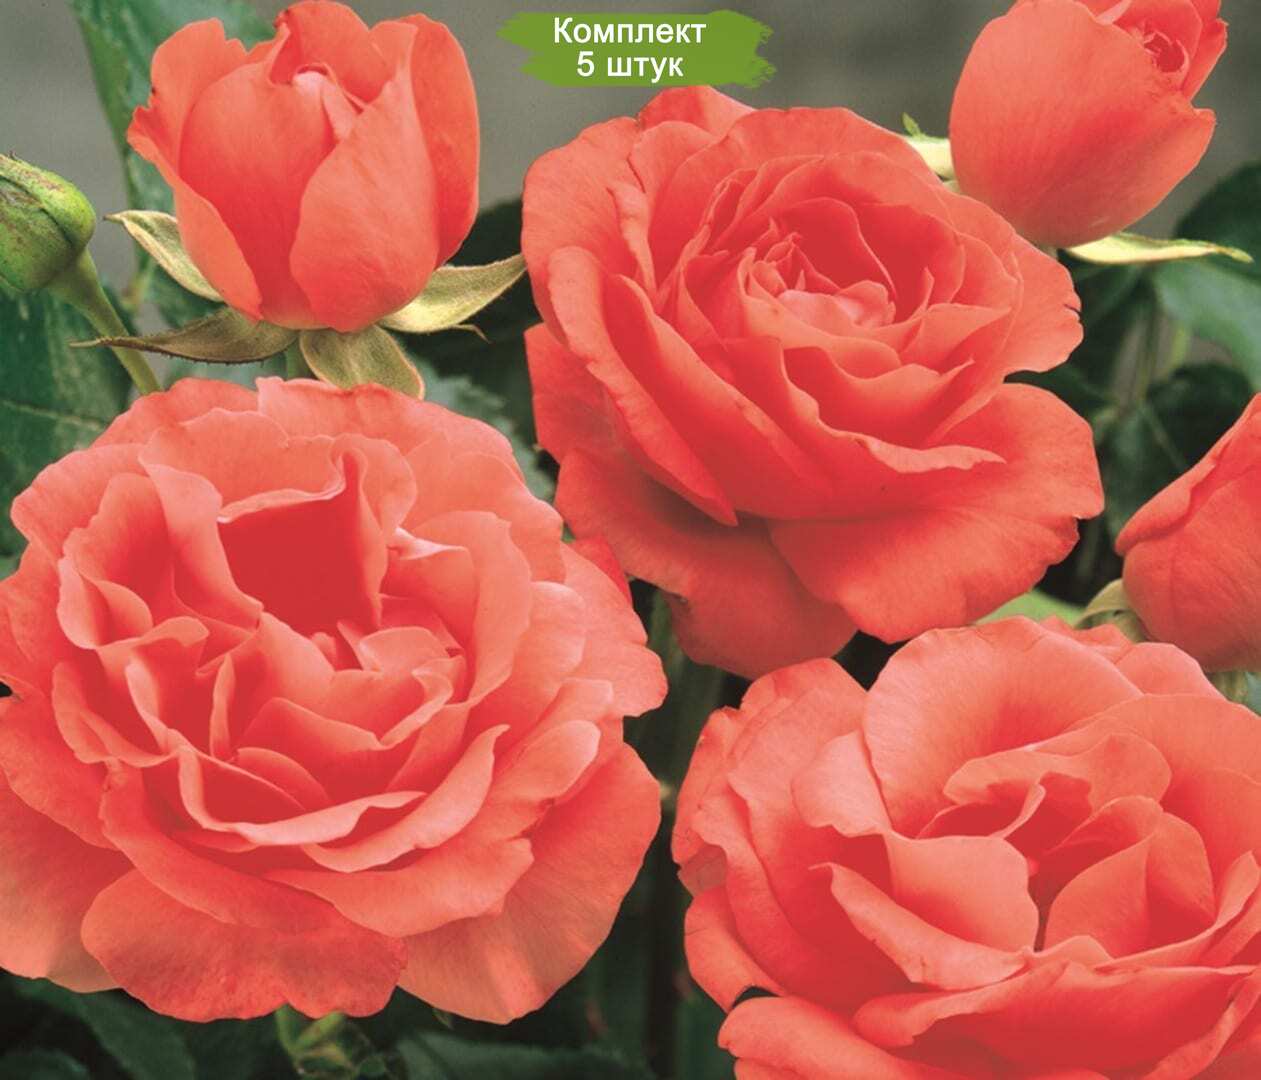 Саженцы кустовой розы Мармалад Скайс (Marmalade Skies) -  5 шт.